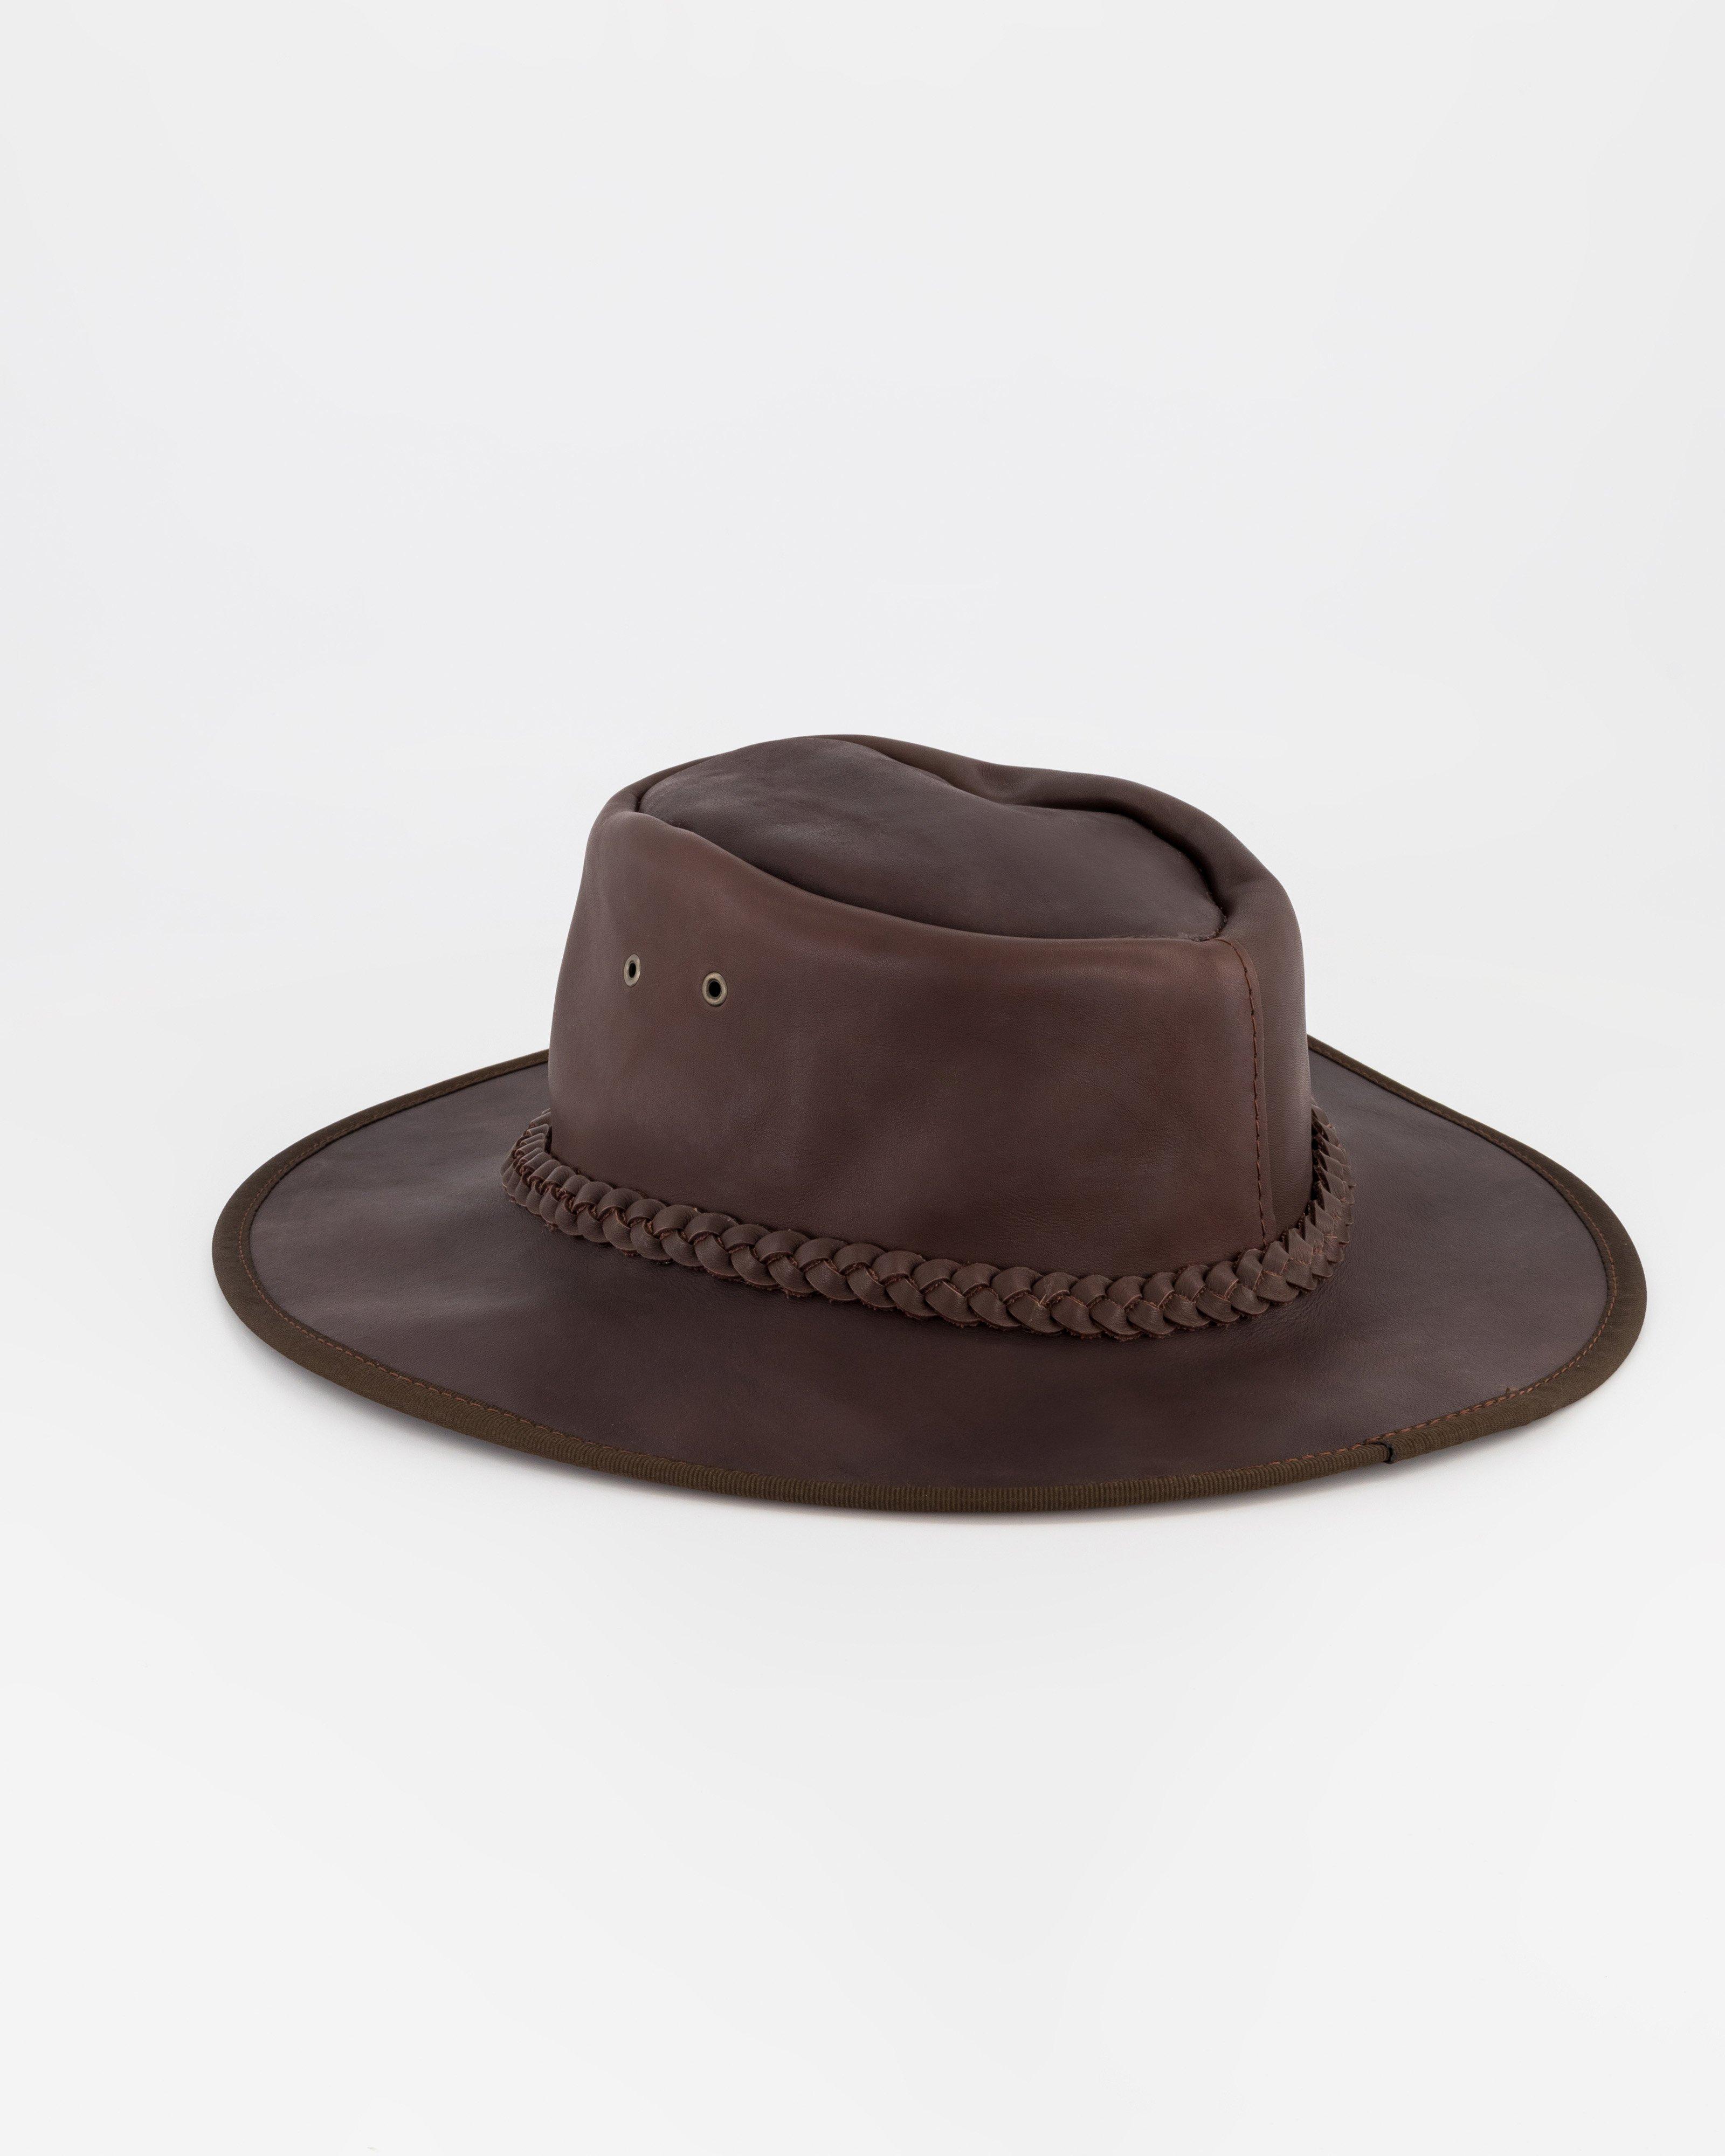 Cape Union Survivor Leather Hat -  Brown